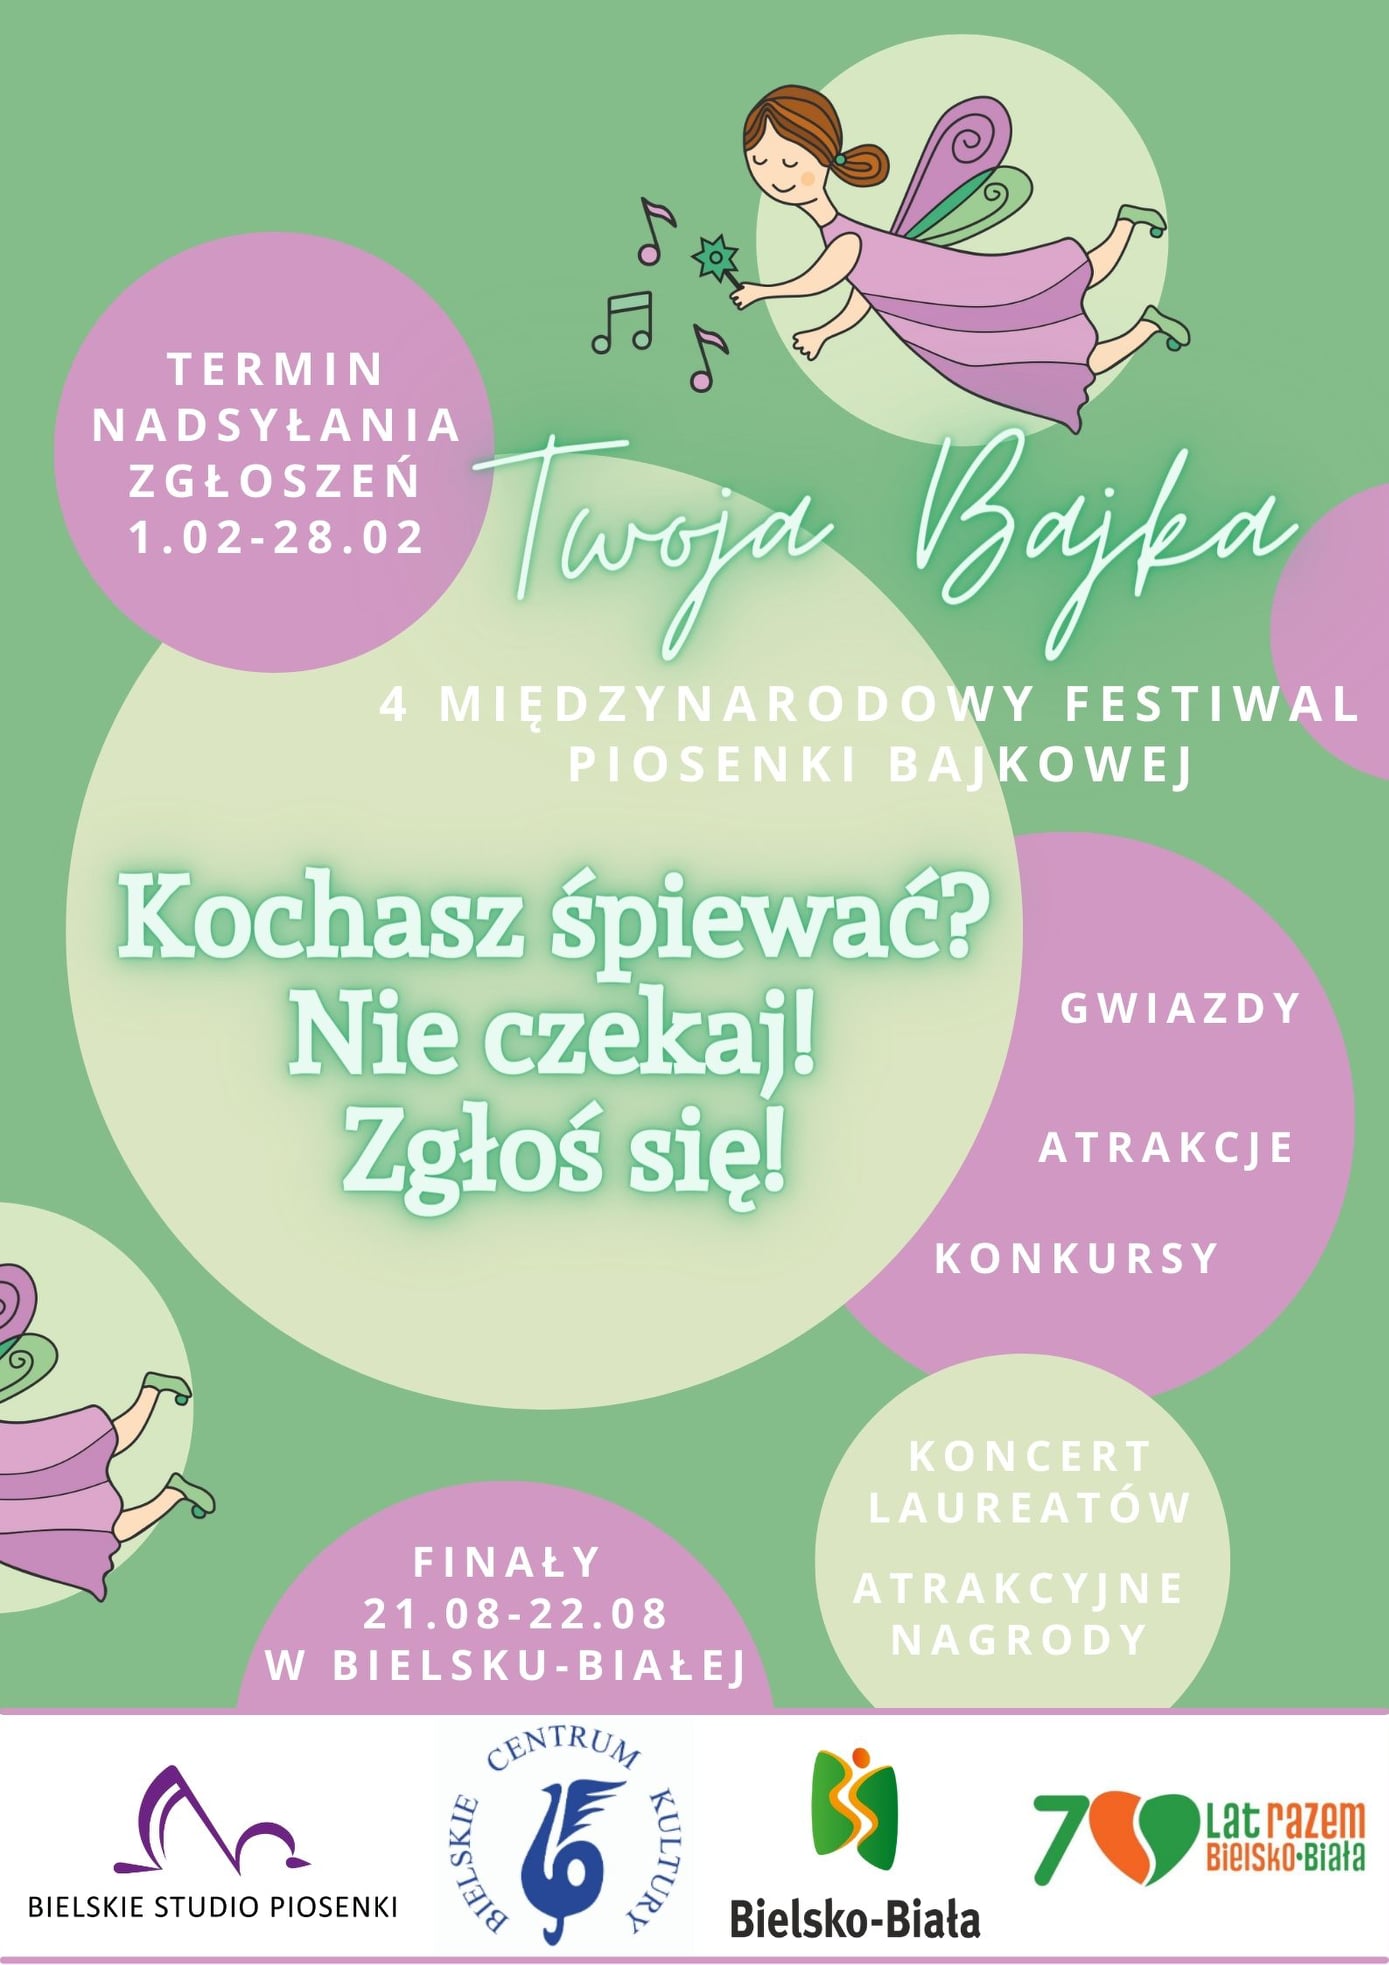  4. Międzynarodowy Festiwal Piosenki Bajkowej – Twoja Bajka: Anna Guzik, Studio Accantus
 Na zdjęciu plakat festiwalu